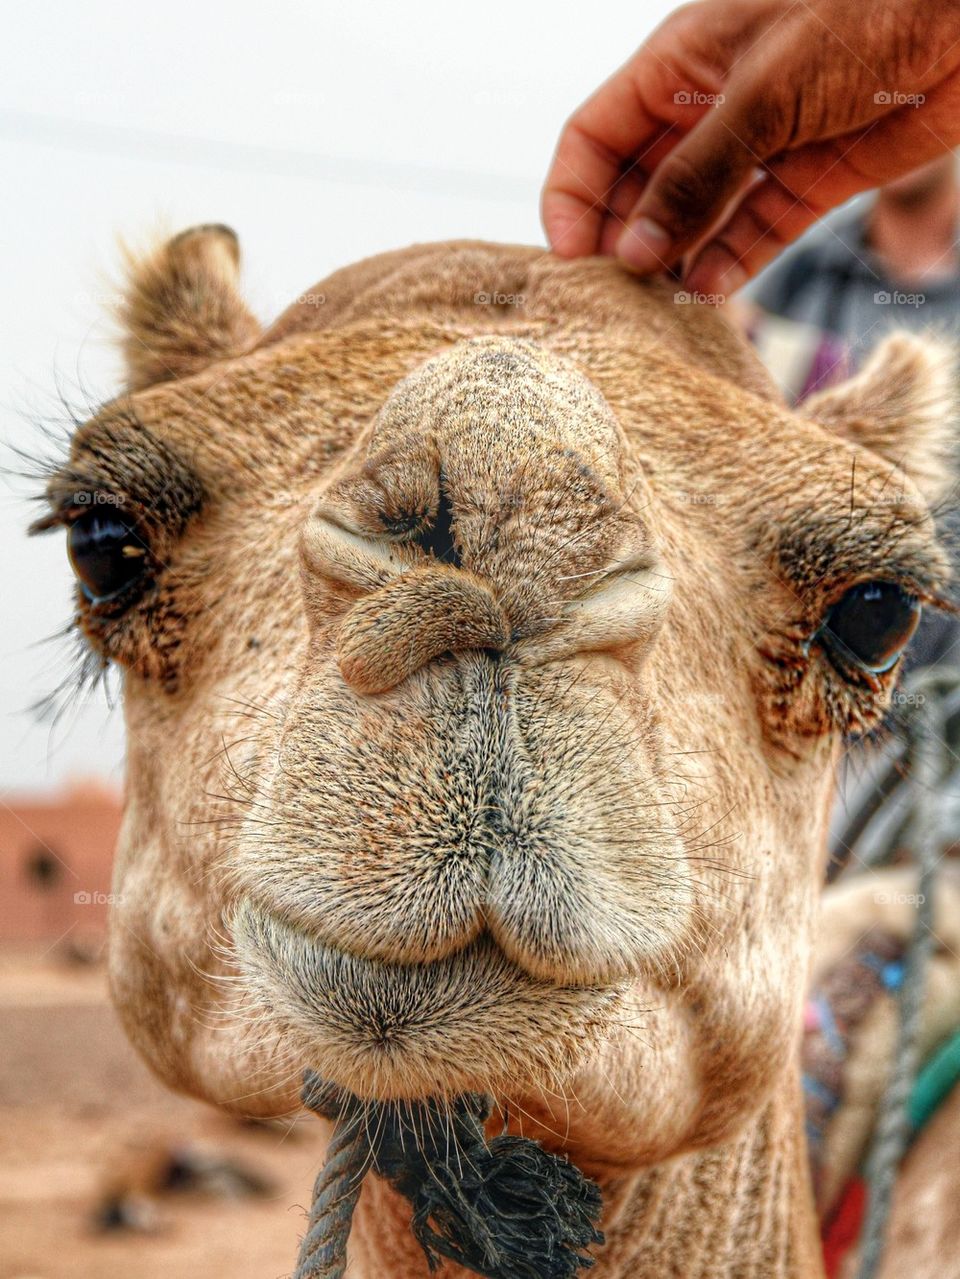 Cutest camel